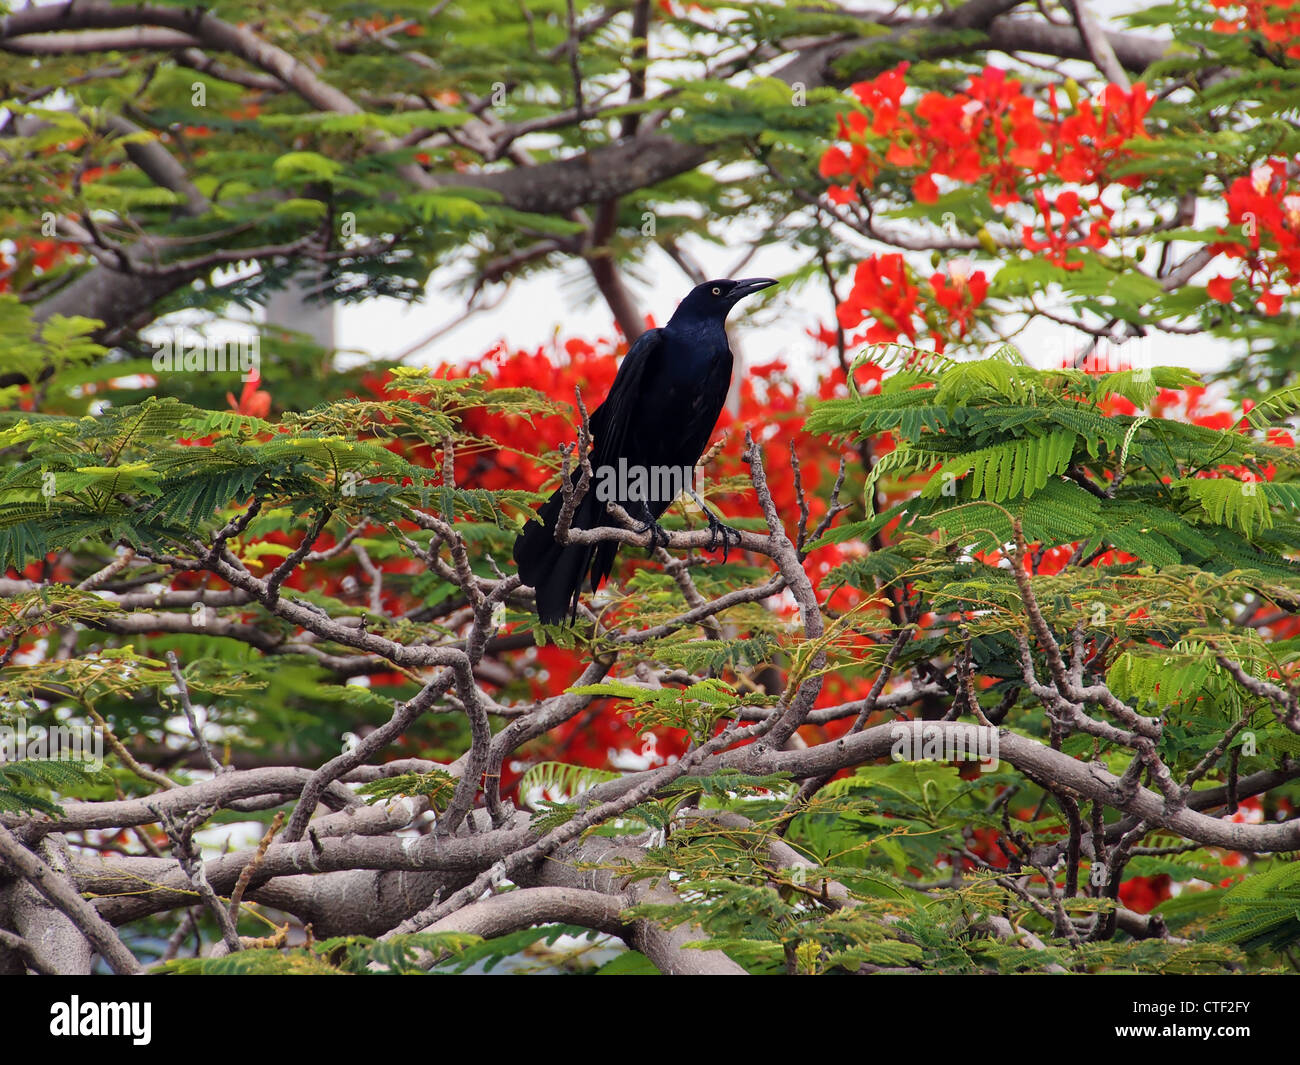 Groß-tailed Grackle in einem extravaganten Baum in Blüte Stockfoto